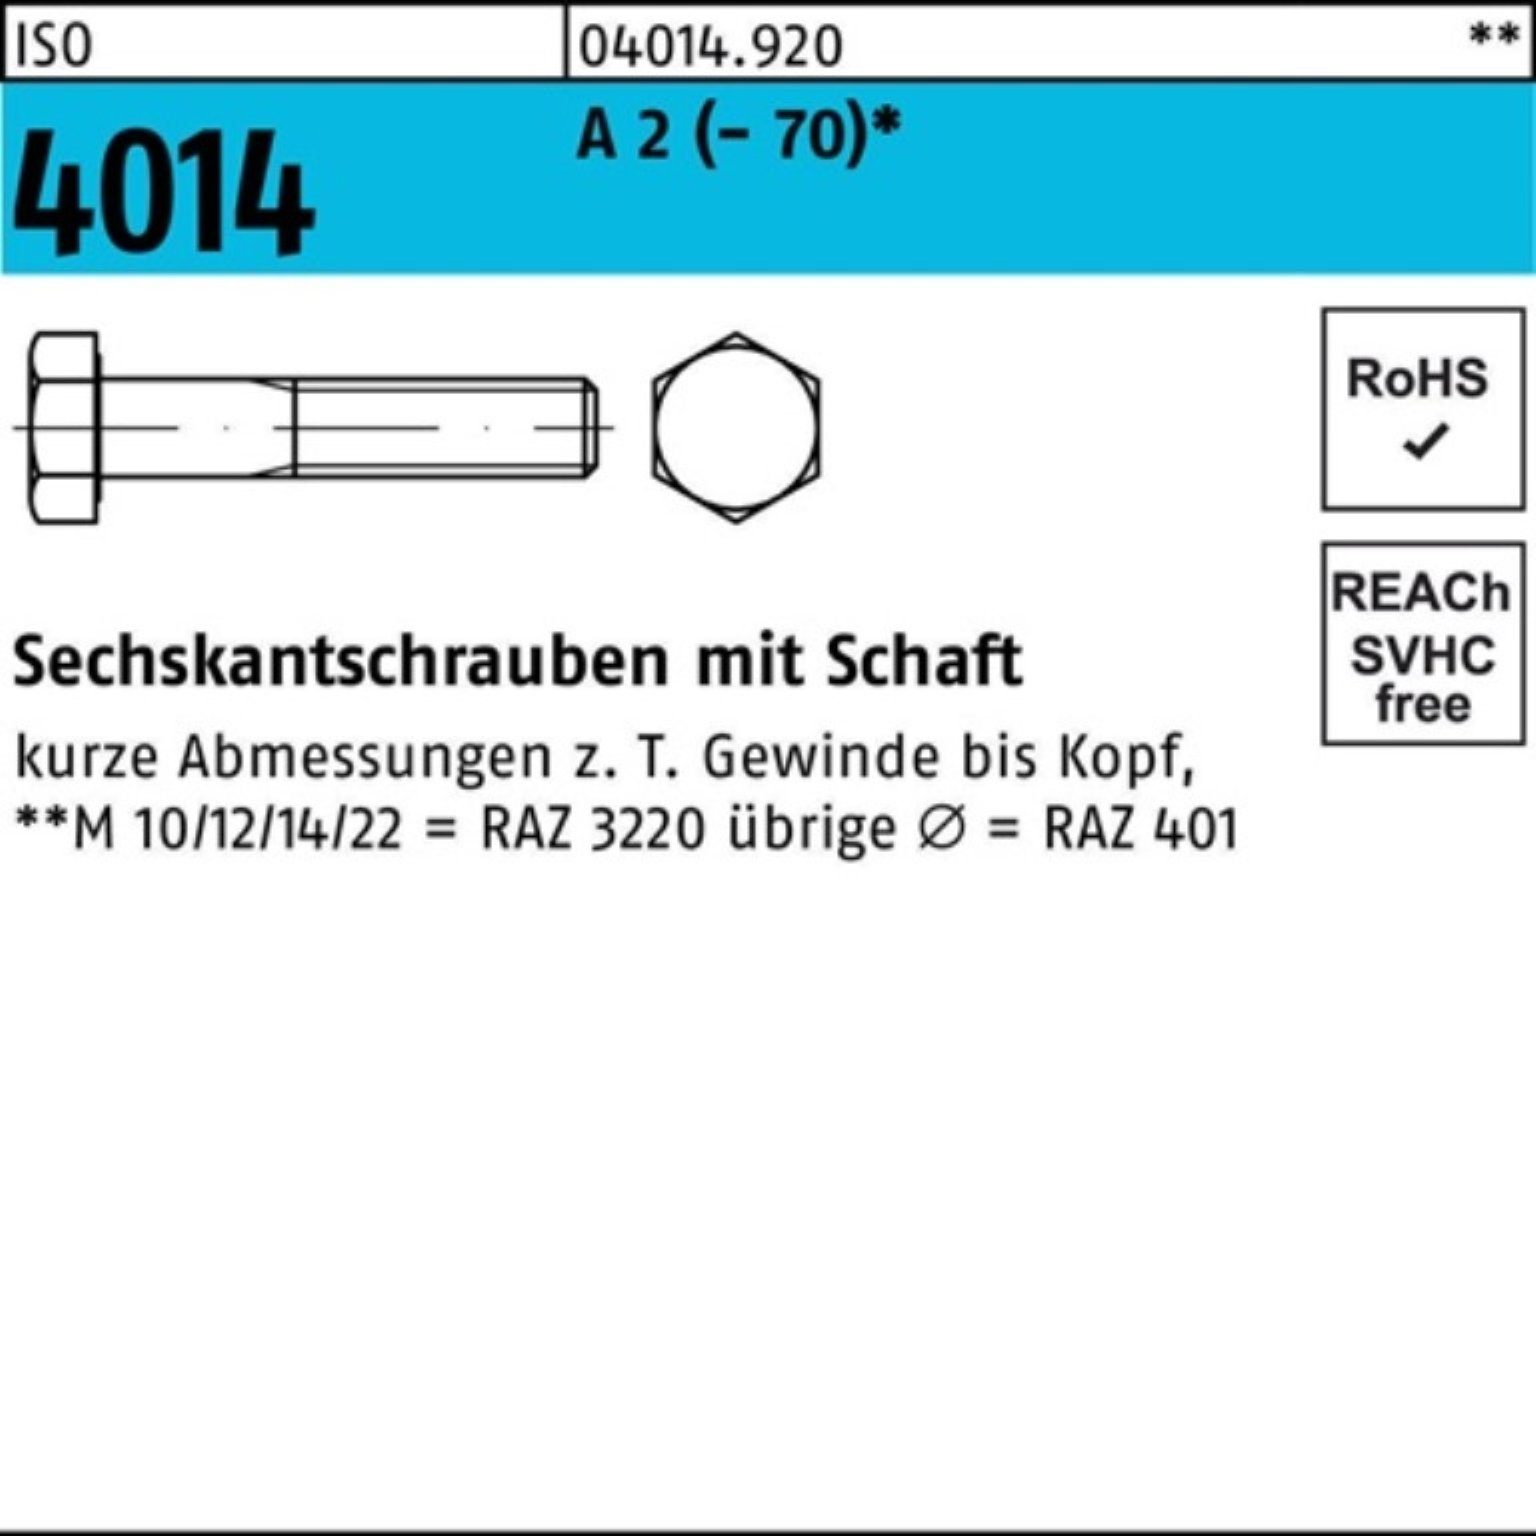 Bufab Sechskantschraube 100er Pack Sechskantschraube ISO 4014 Schaft M27x 90 A 2 (70) 1 Stü